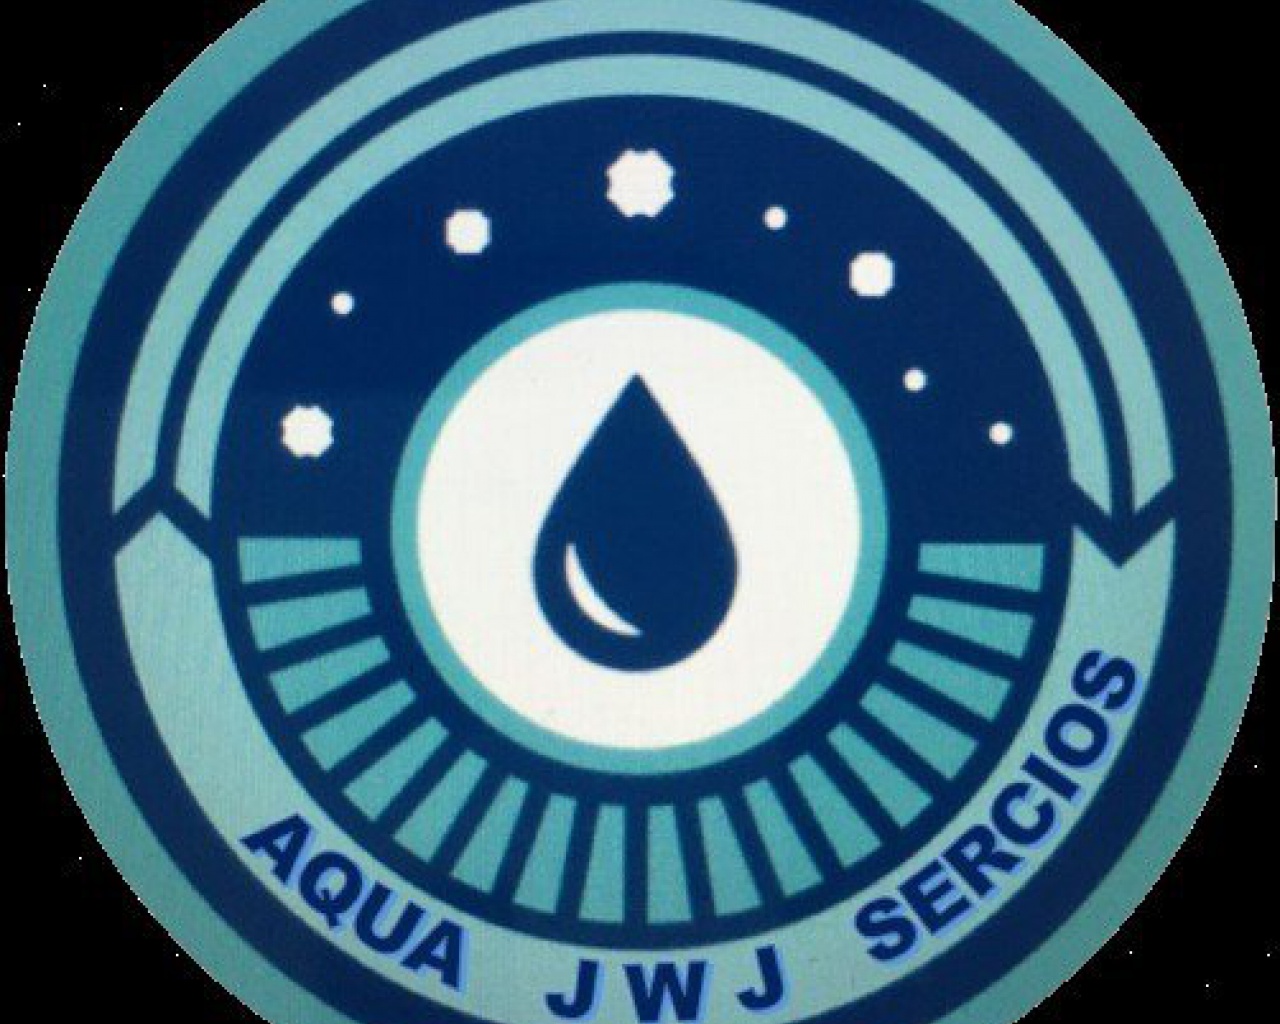 JWJ Aqua Servicios